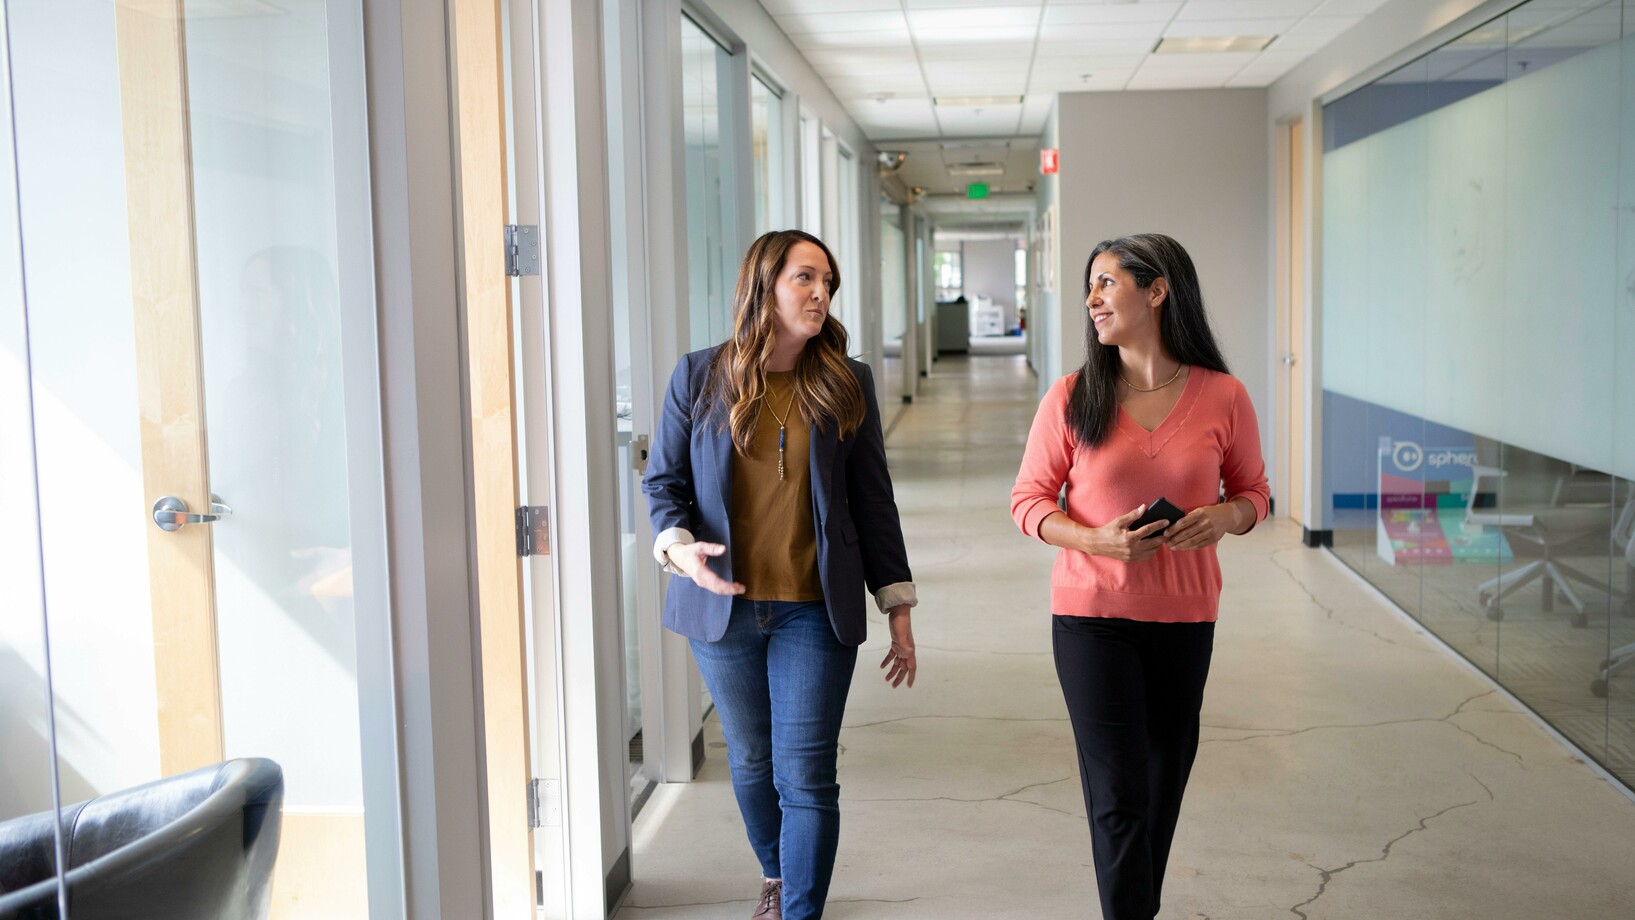 Women talking while walking on hallway